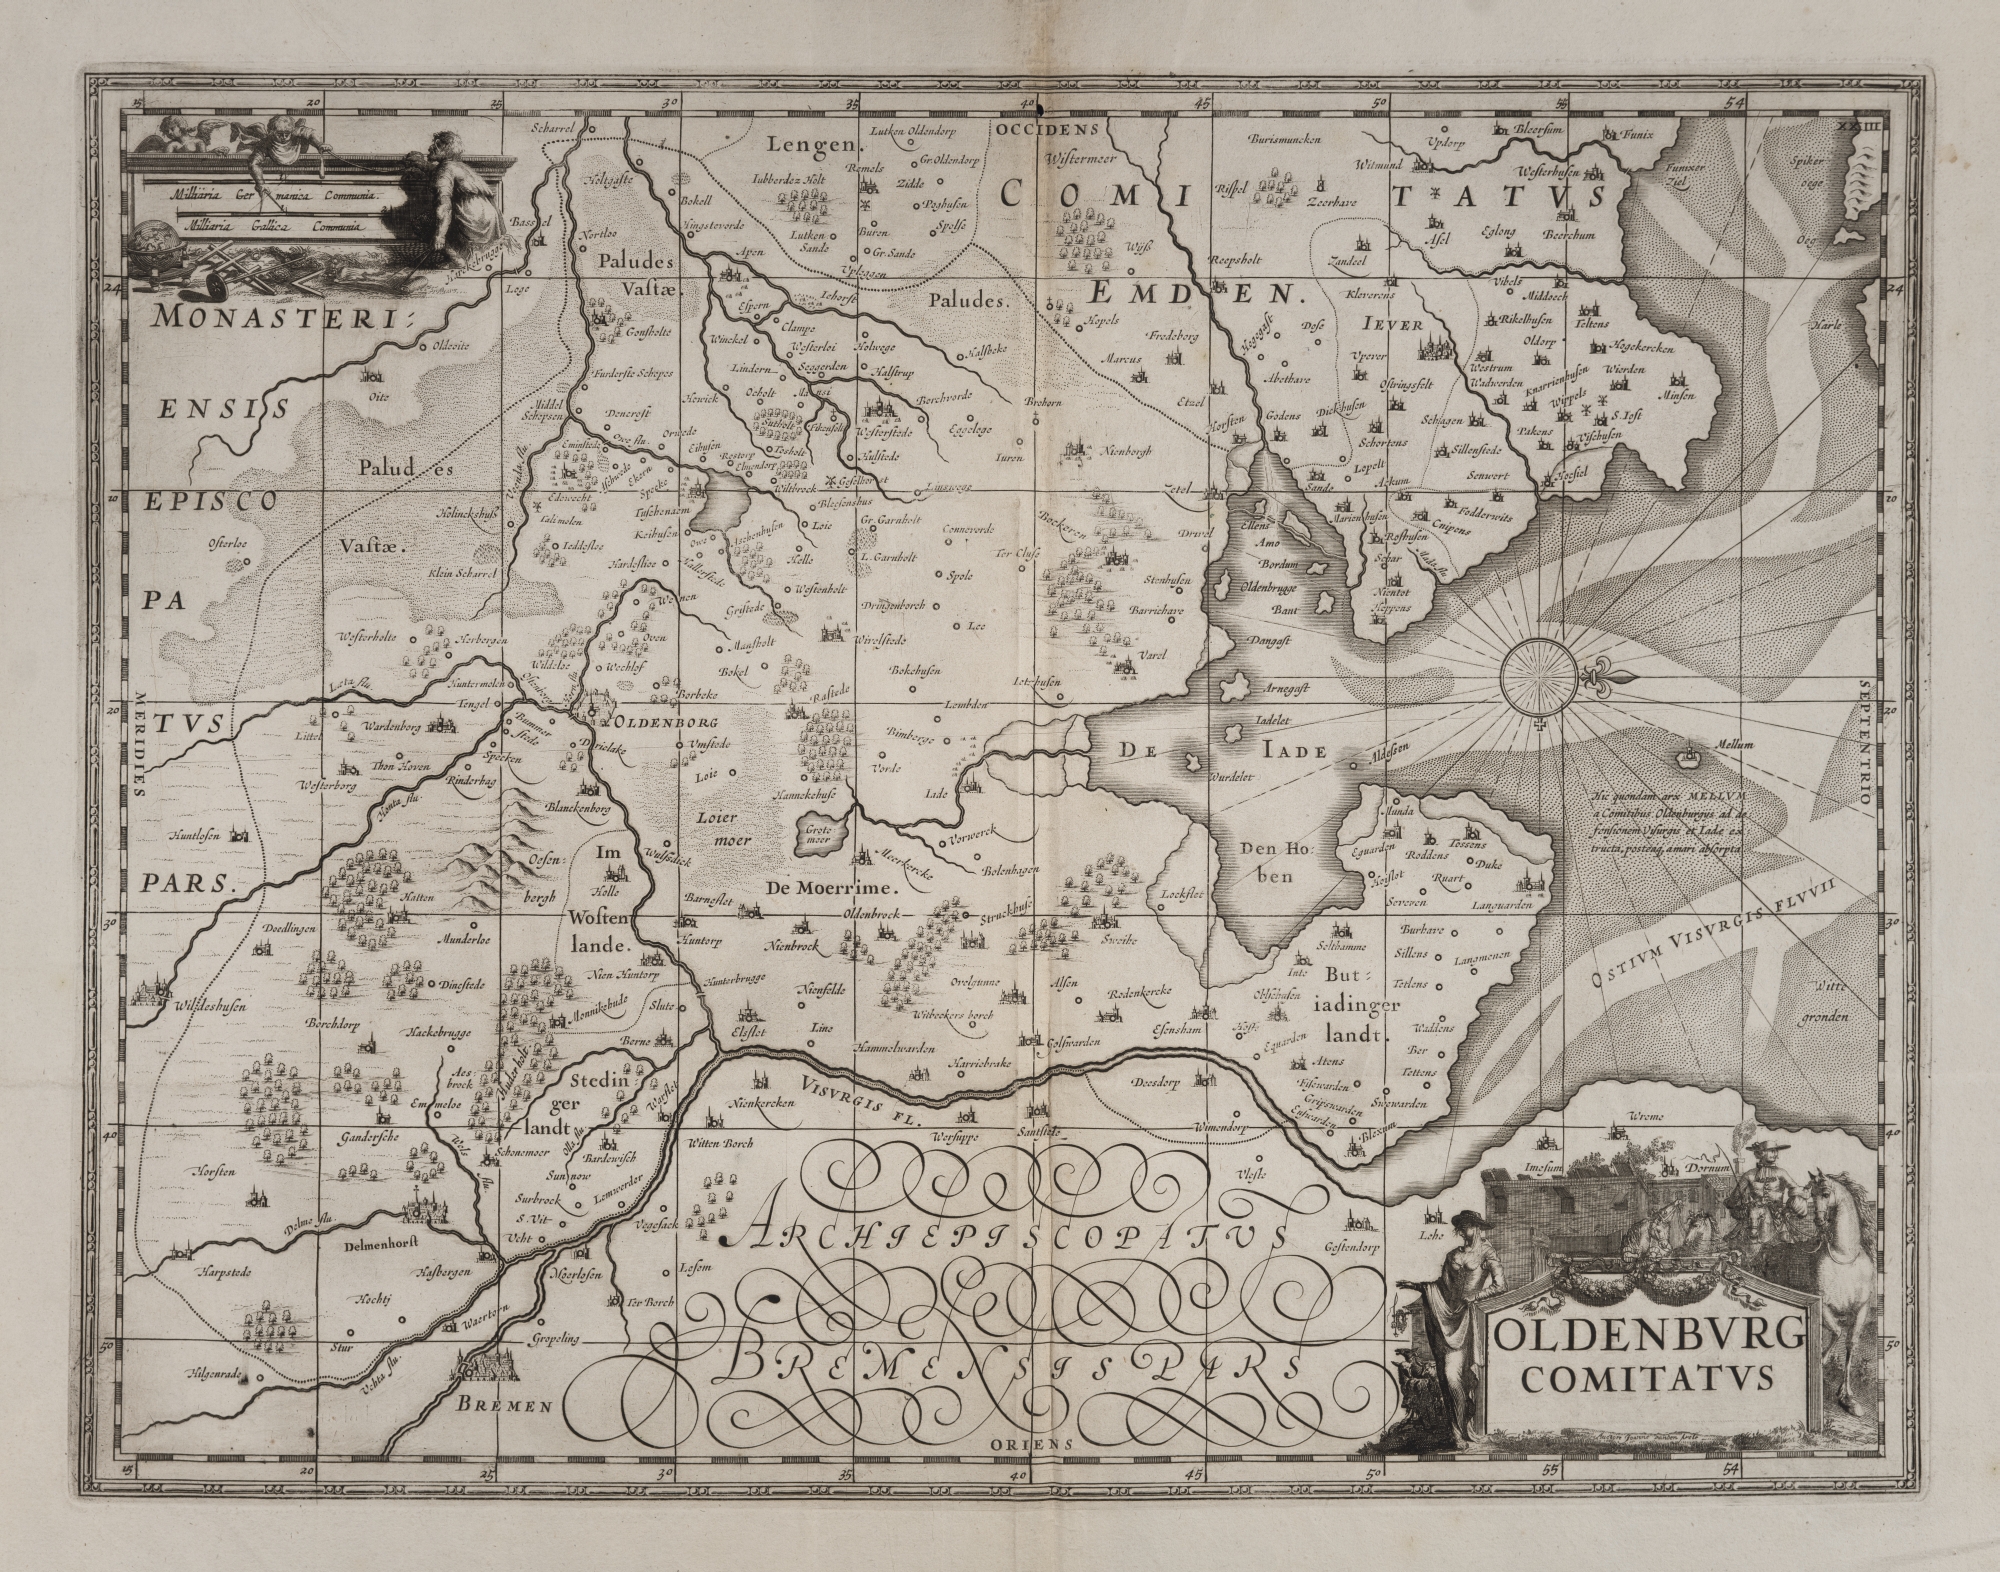 K04. Kaart van het graafschap Oldenburg, circa 1680 (UBG uklu 02-16-24)K04. Map of the County of Oldenburg, circa 1680 (UBG uklu 02-16-24)K04. Karte der Grafschaft Oldenburg, ca. 1680 (UBG uklu 02-16-24)